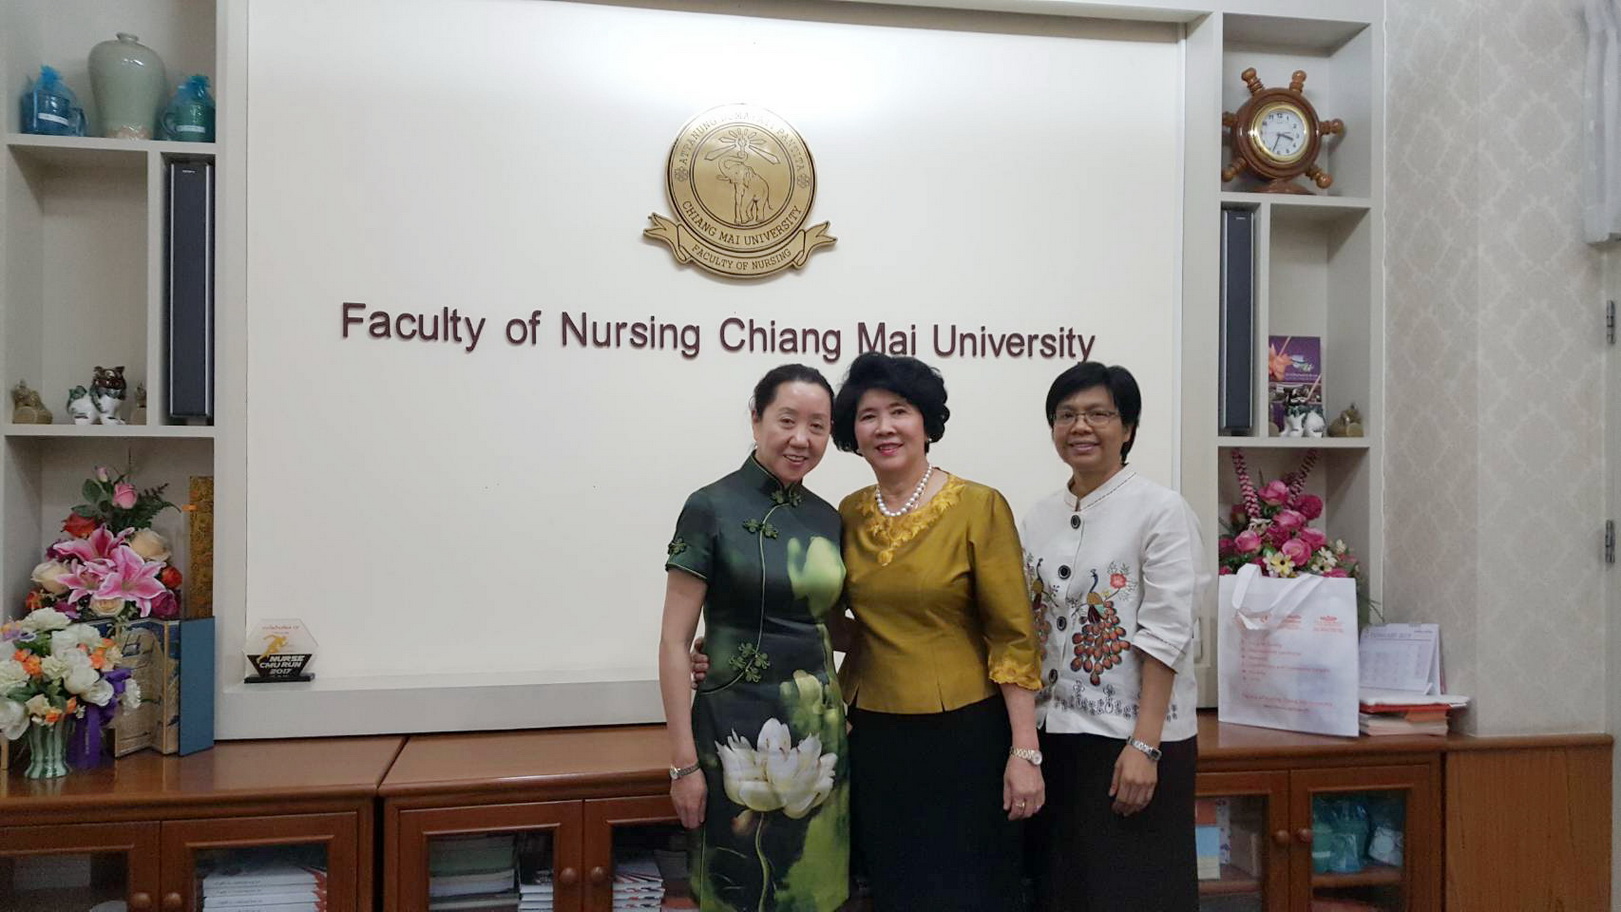 
	เจรจาความร่วมมือทางวิชาการกับผู้แทนจาก Kunming Medical University สาธารณรัฐประชาชนจีน
